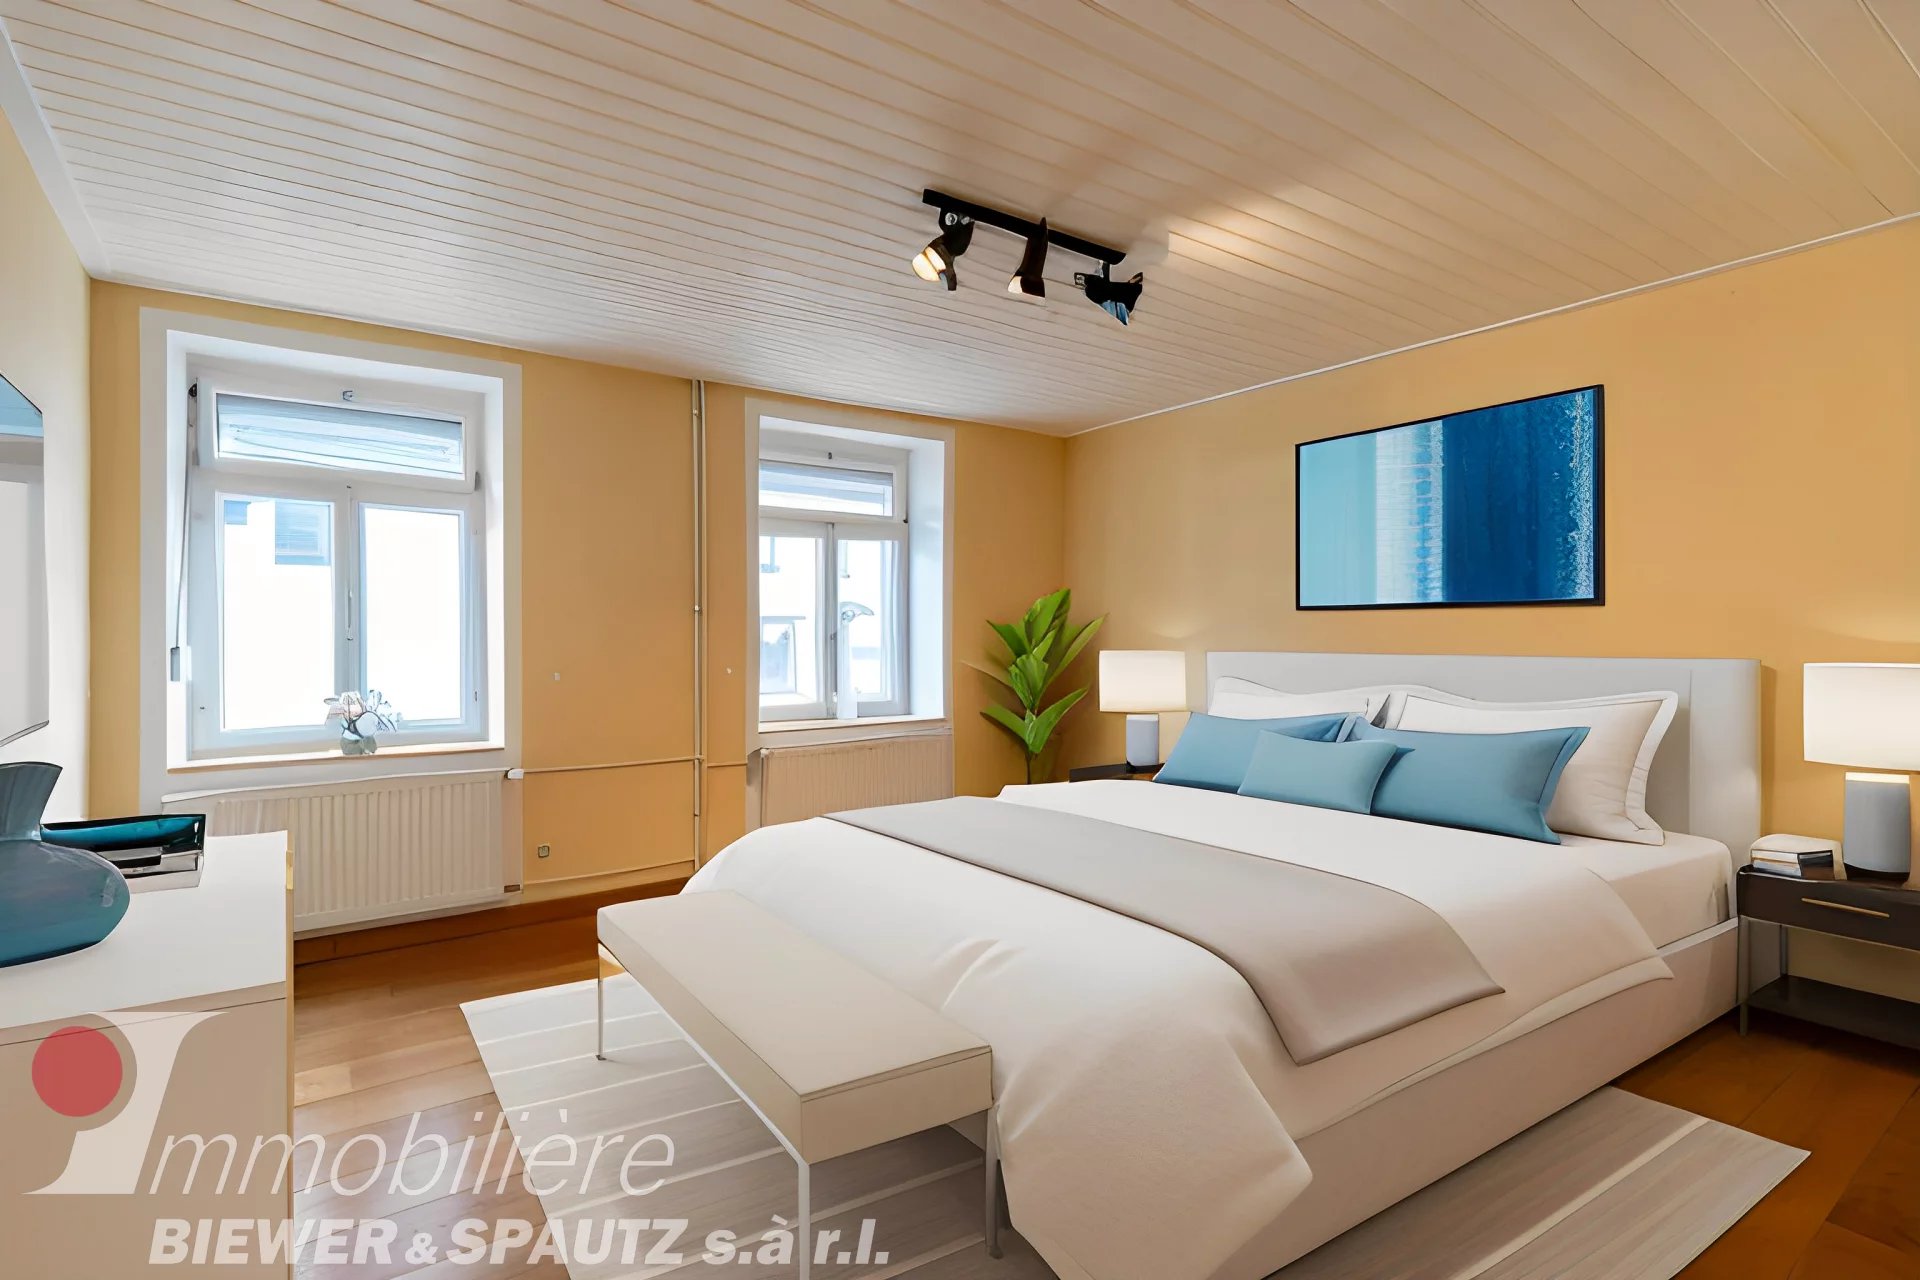 RÉRSERVÉ - maison à Seninngen avec 4 chambres à coucher